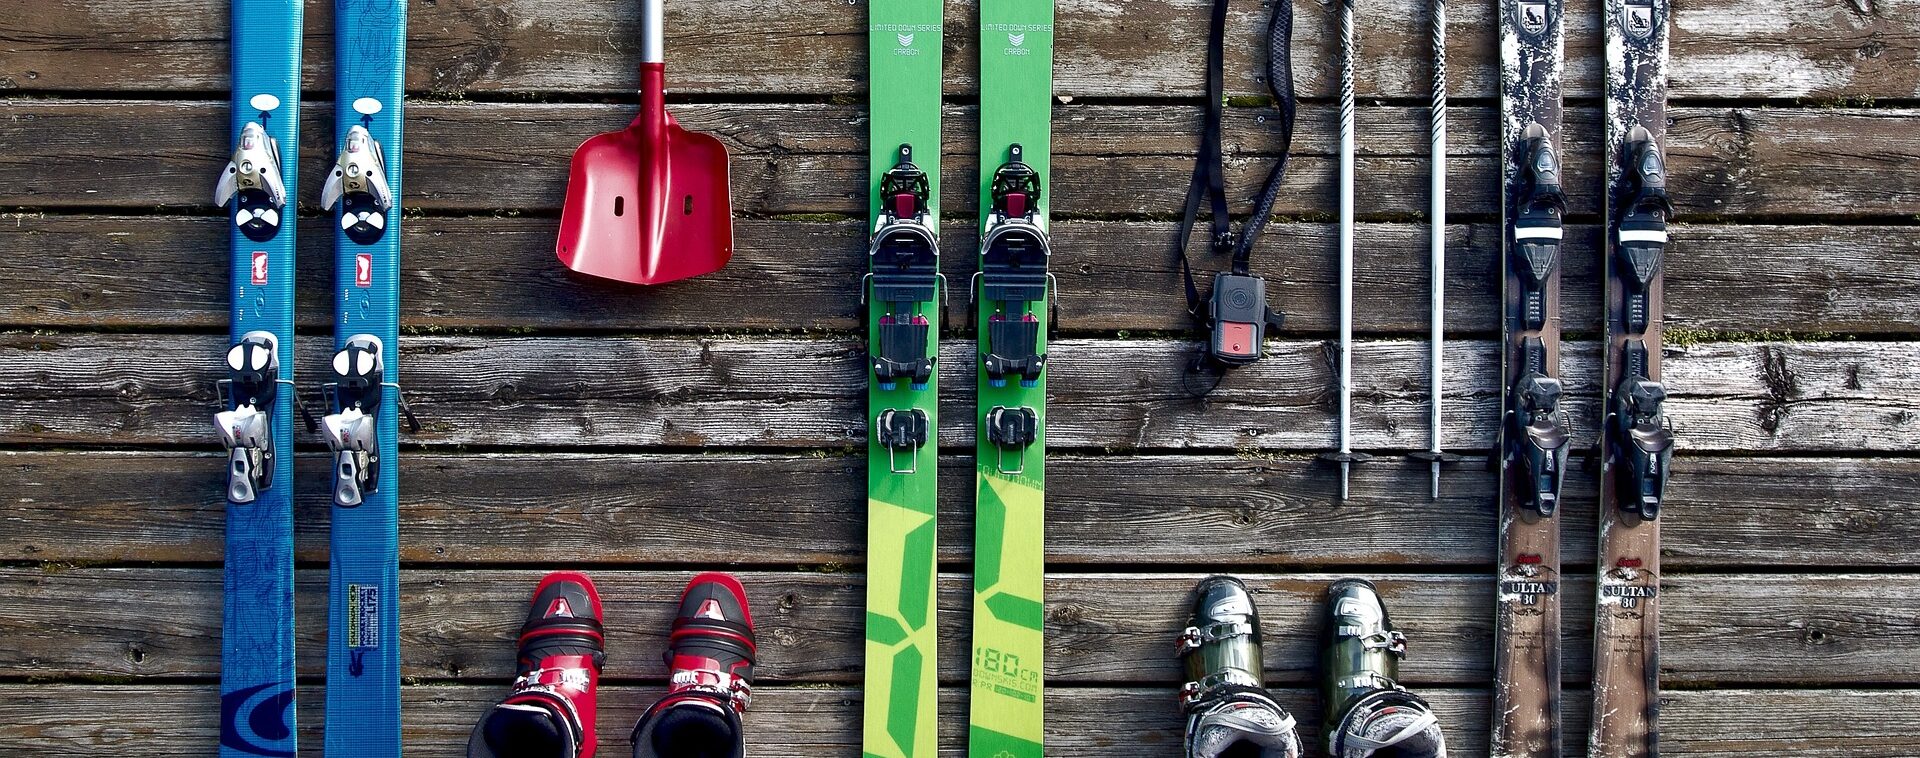 Pjäxor, skidor, spade, packa rätt på skidsemestern i vinter